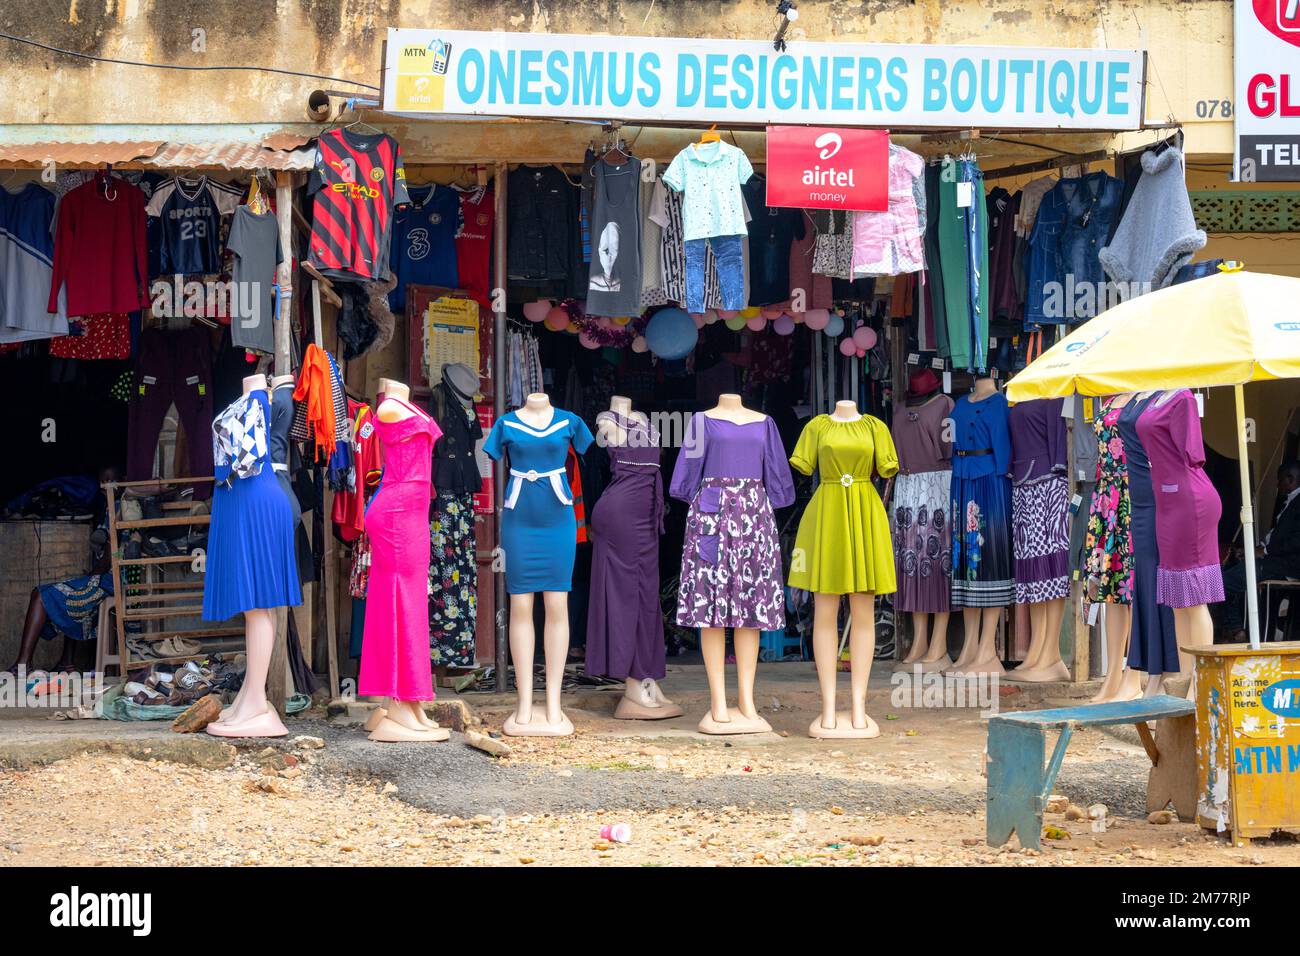 Negozio di abbigliamento Street vending nella Main Street di una piccola cittadina nel sud-ovest dell'Uganda. Foto Stock